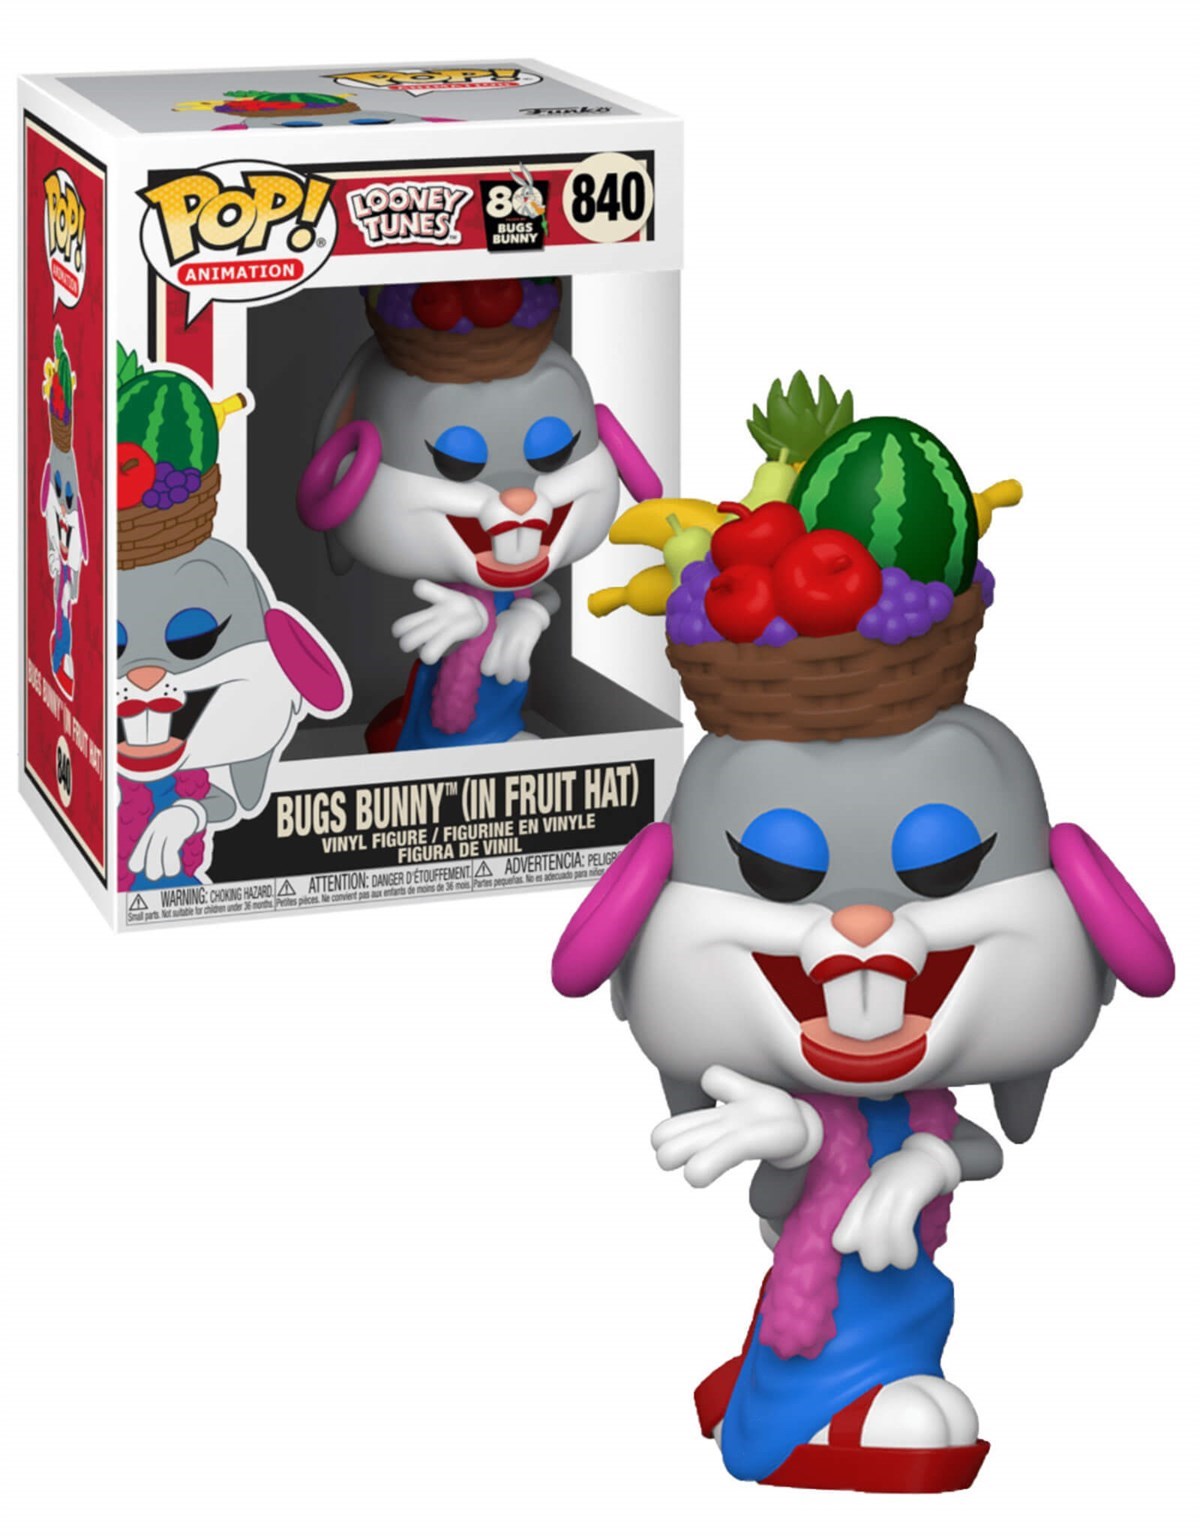 Funko Pop Figür - Looney Tunes Bugs Bunny ( In Fruit Hat ) konsolkulubu